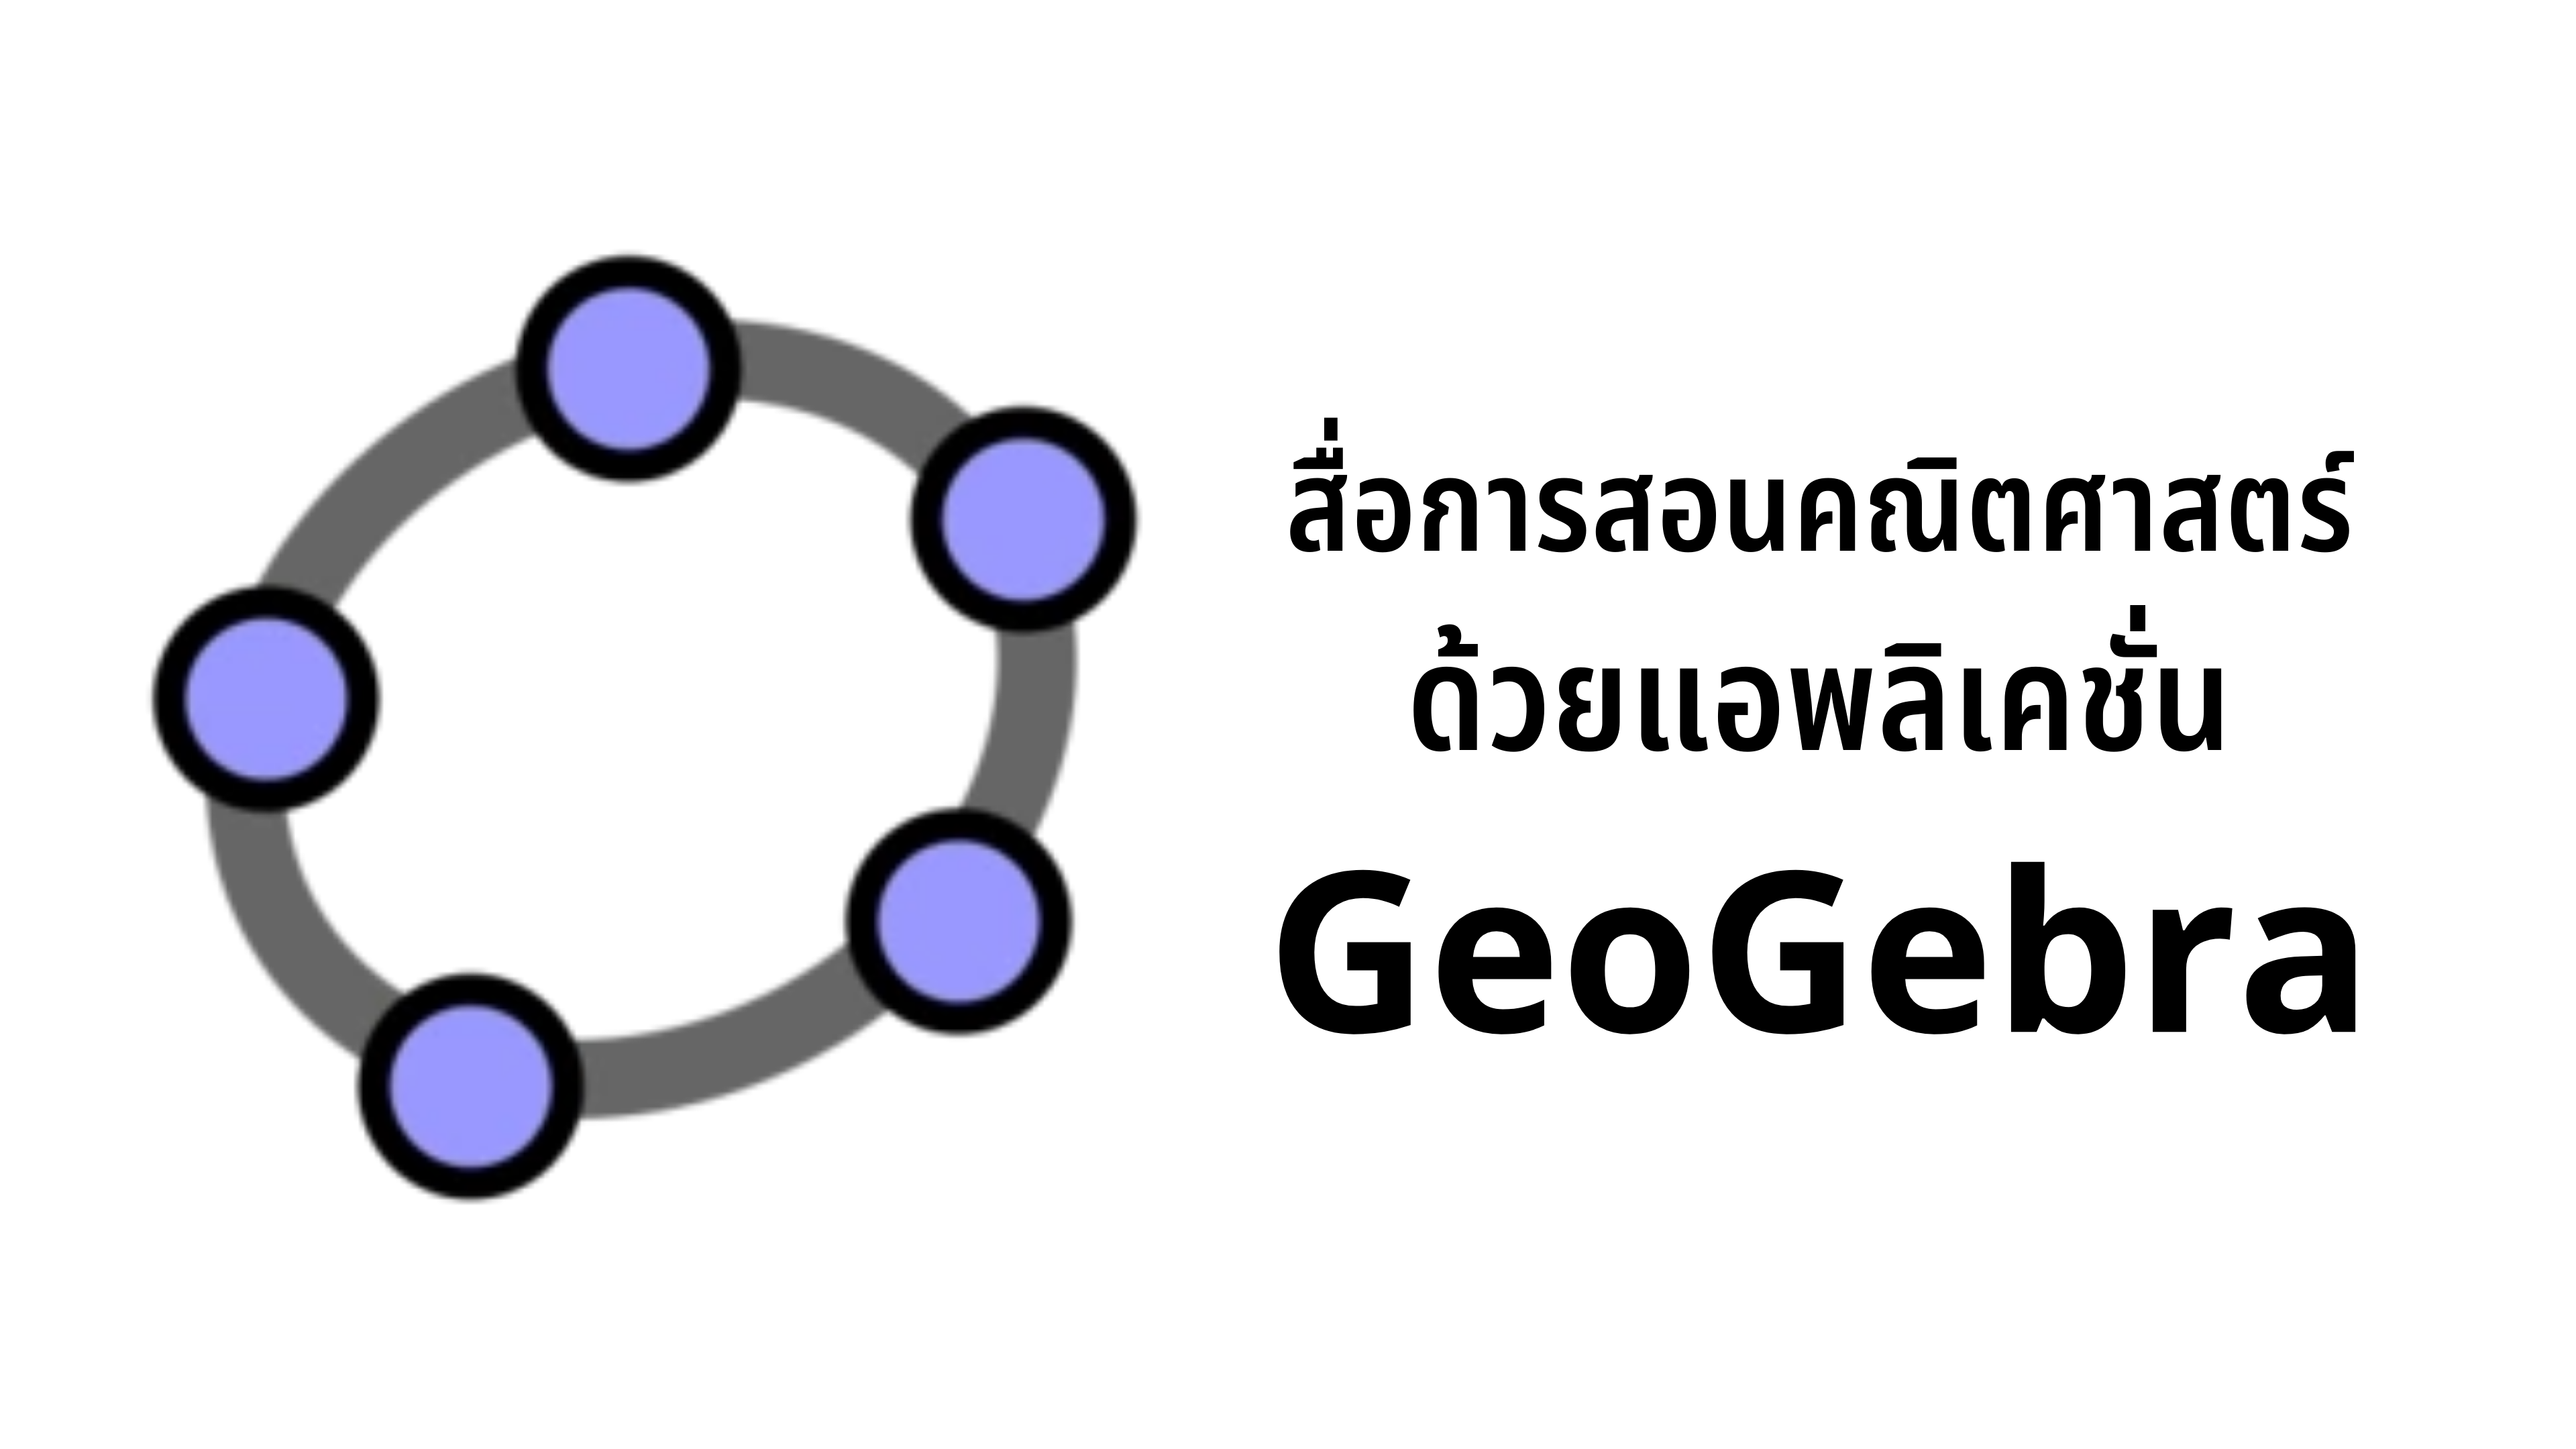 ภาพประกอบไอเดีย สื่อการสอนคณิตศาสตร์ ด้วยแอพลิเคชั่น GeoGebra